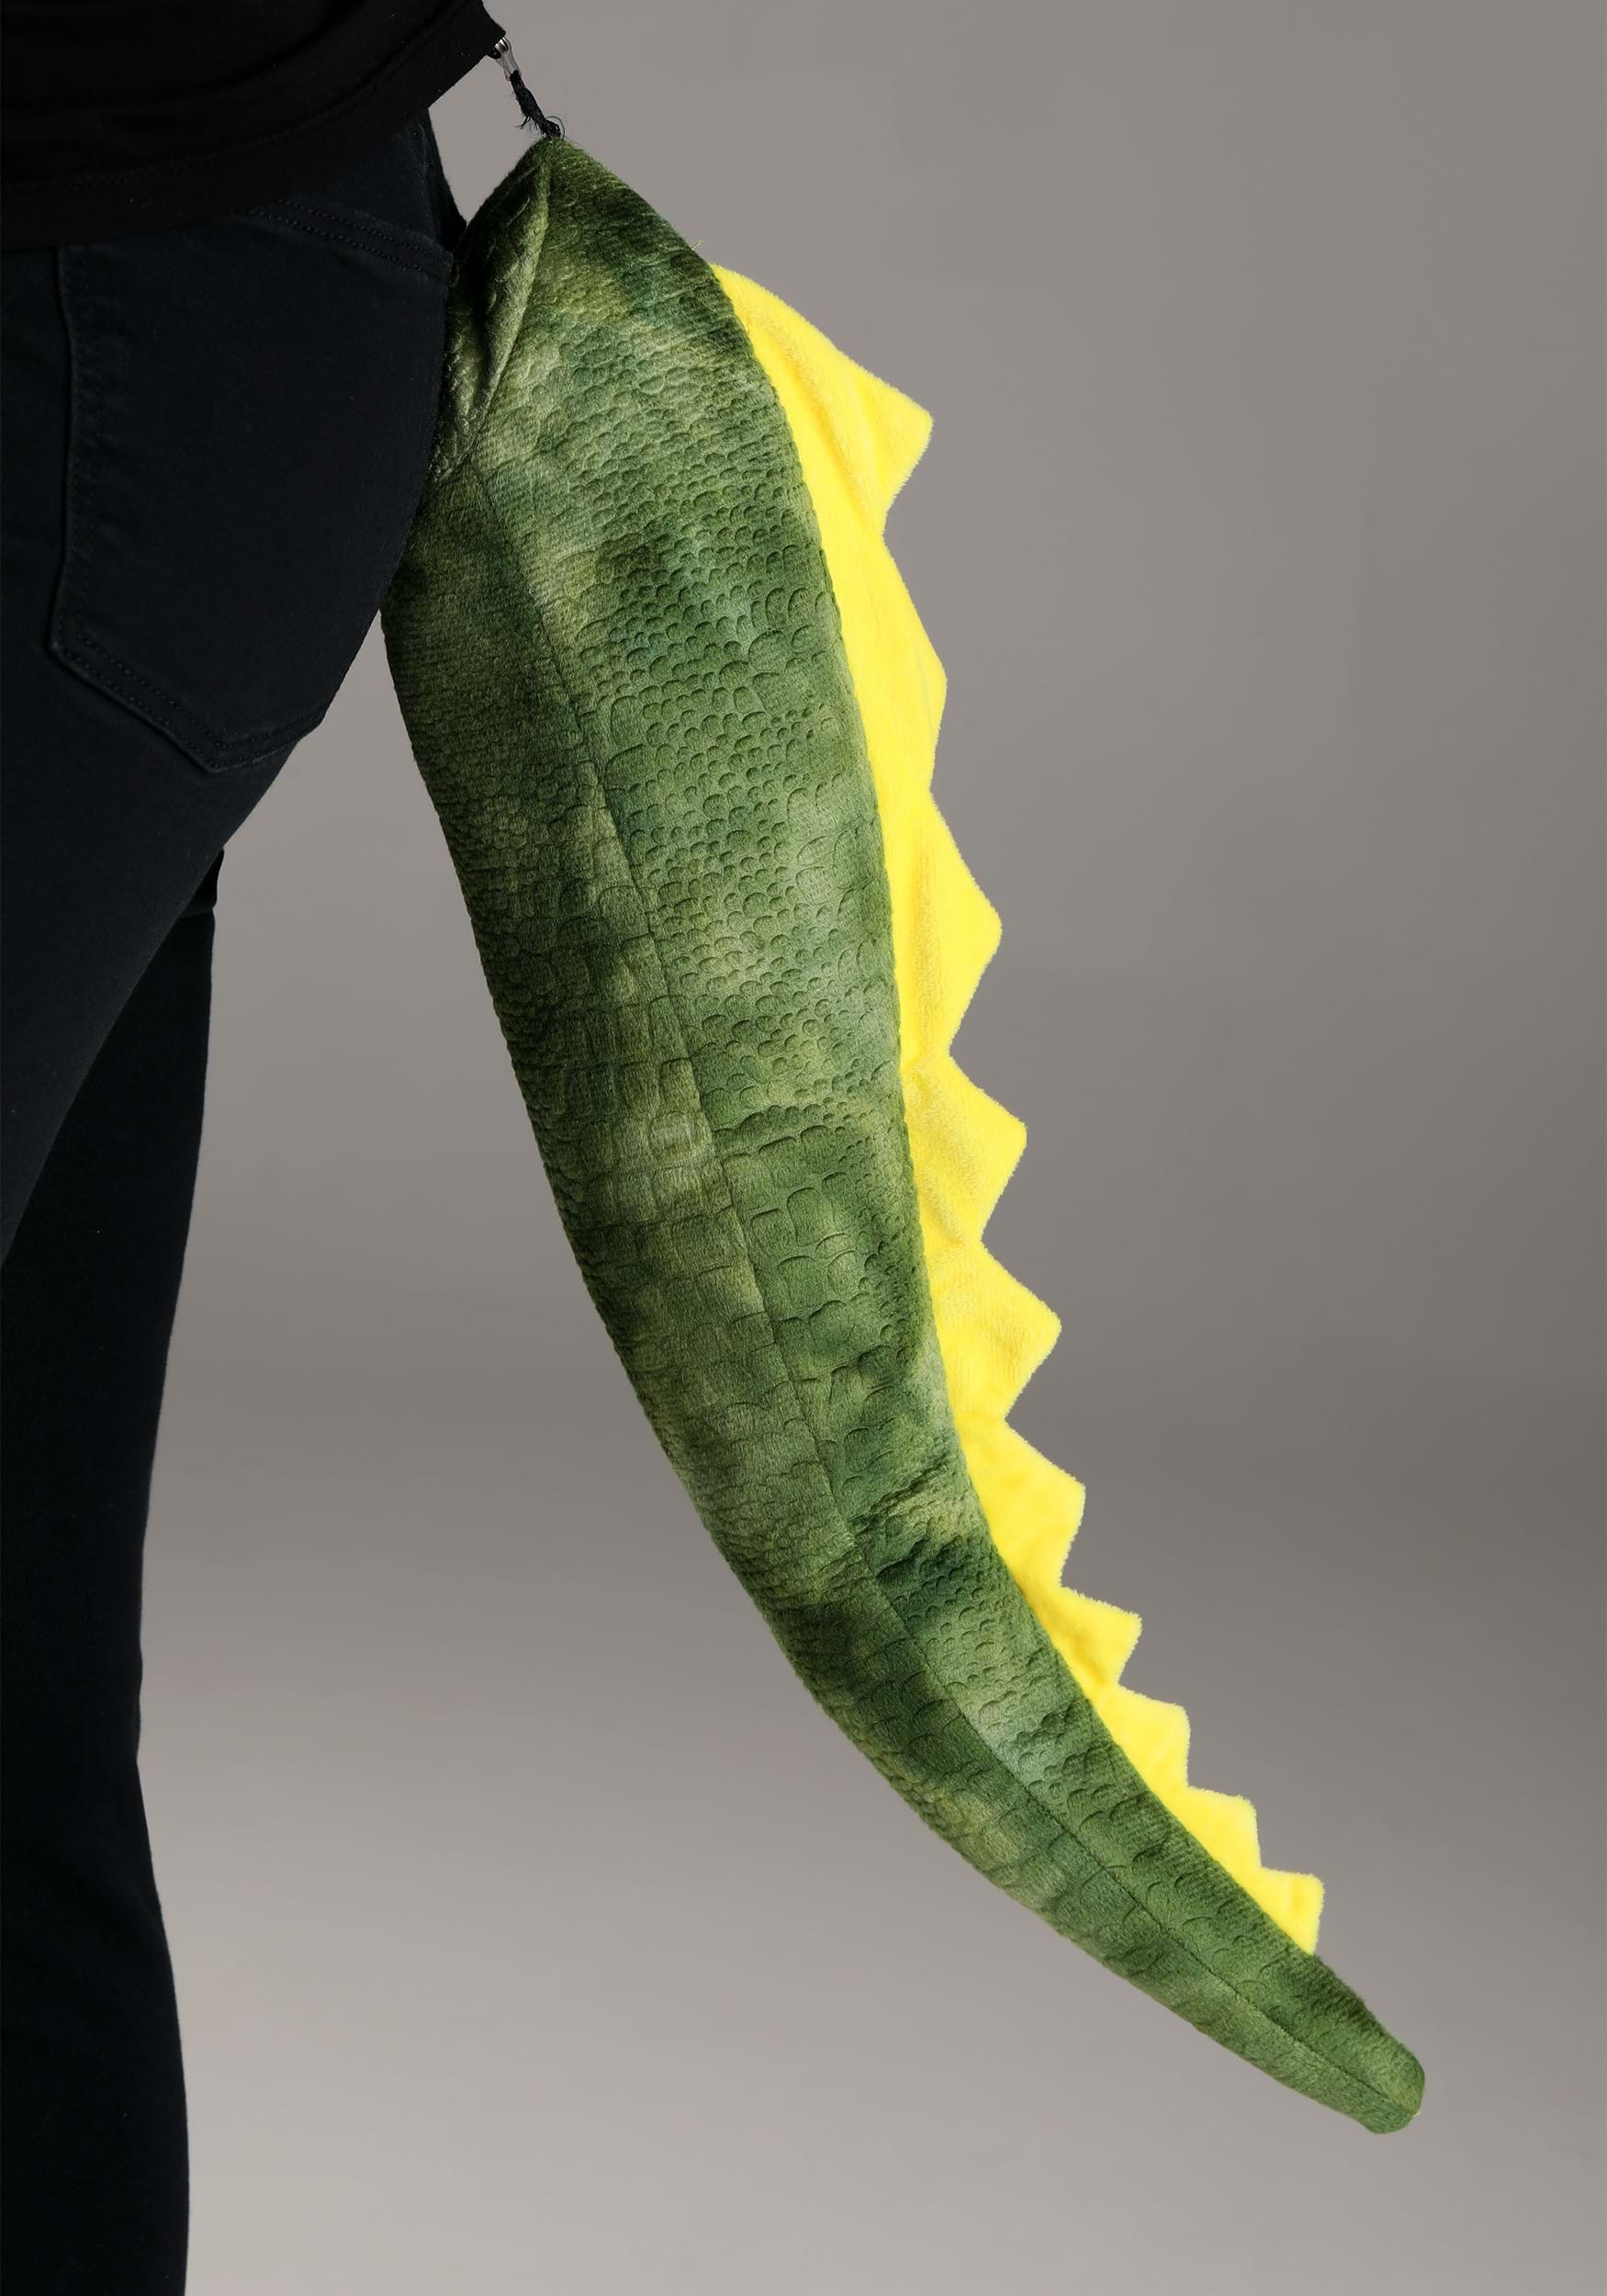 Dinosaur Adult Costume Kit